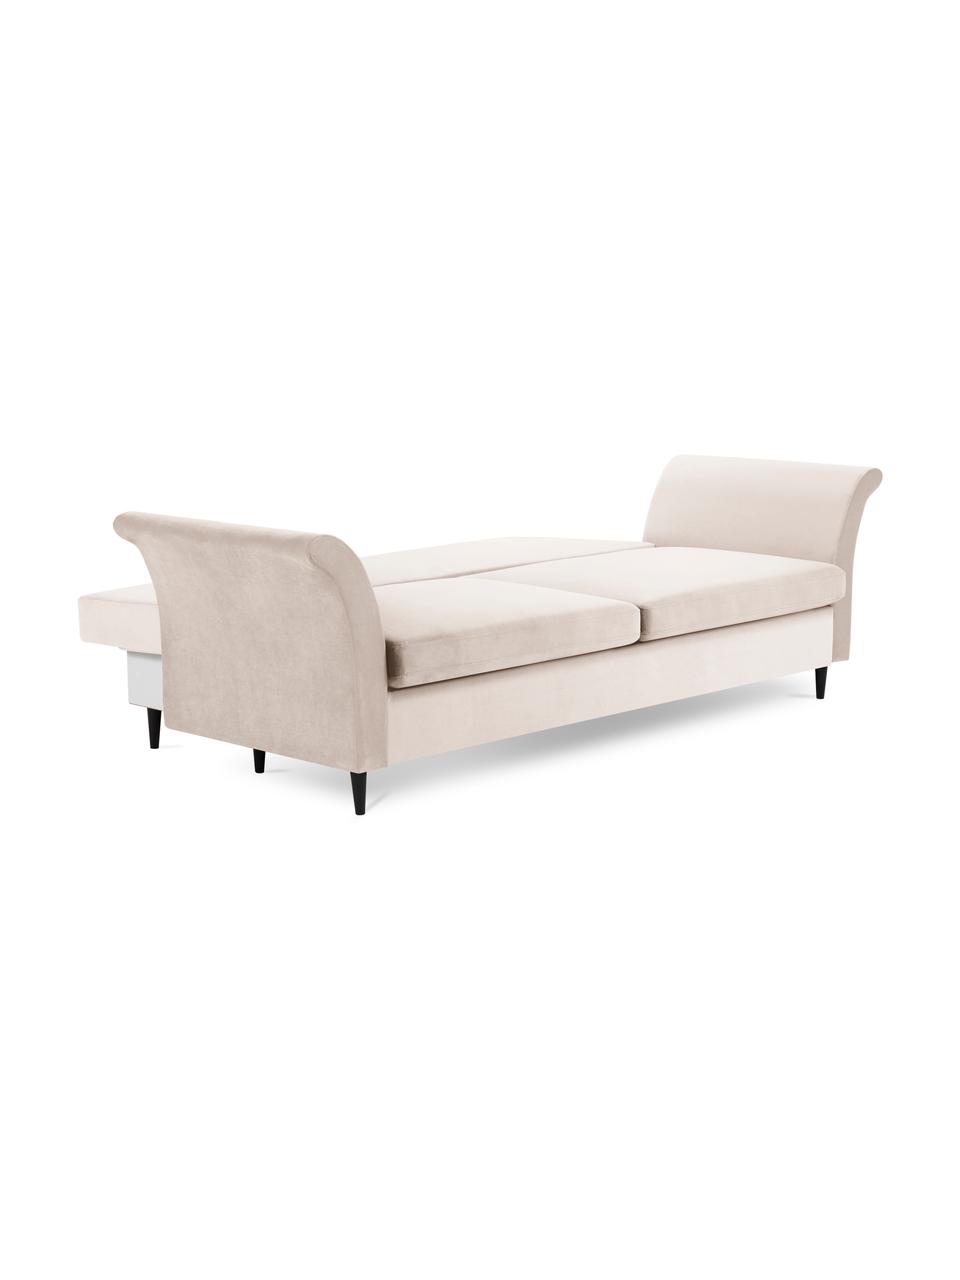 Sofa rozkładana z aksamitu z funkcją przechowywania Lola (3-osobowa), Tapicerka: 100% aksamit poliestrowy , Nogi: drewno, Beżowa tkanina, S 245 x G 95 cm